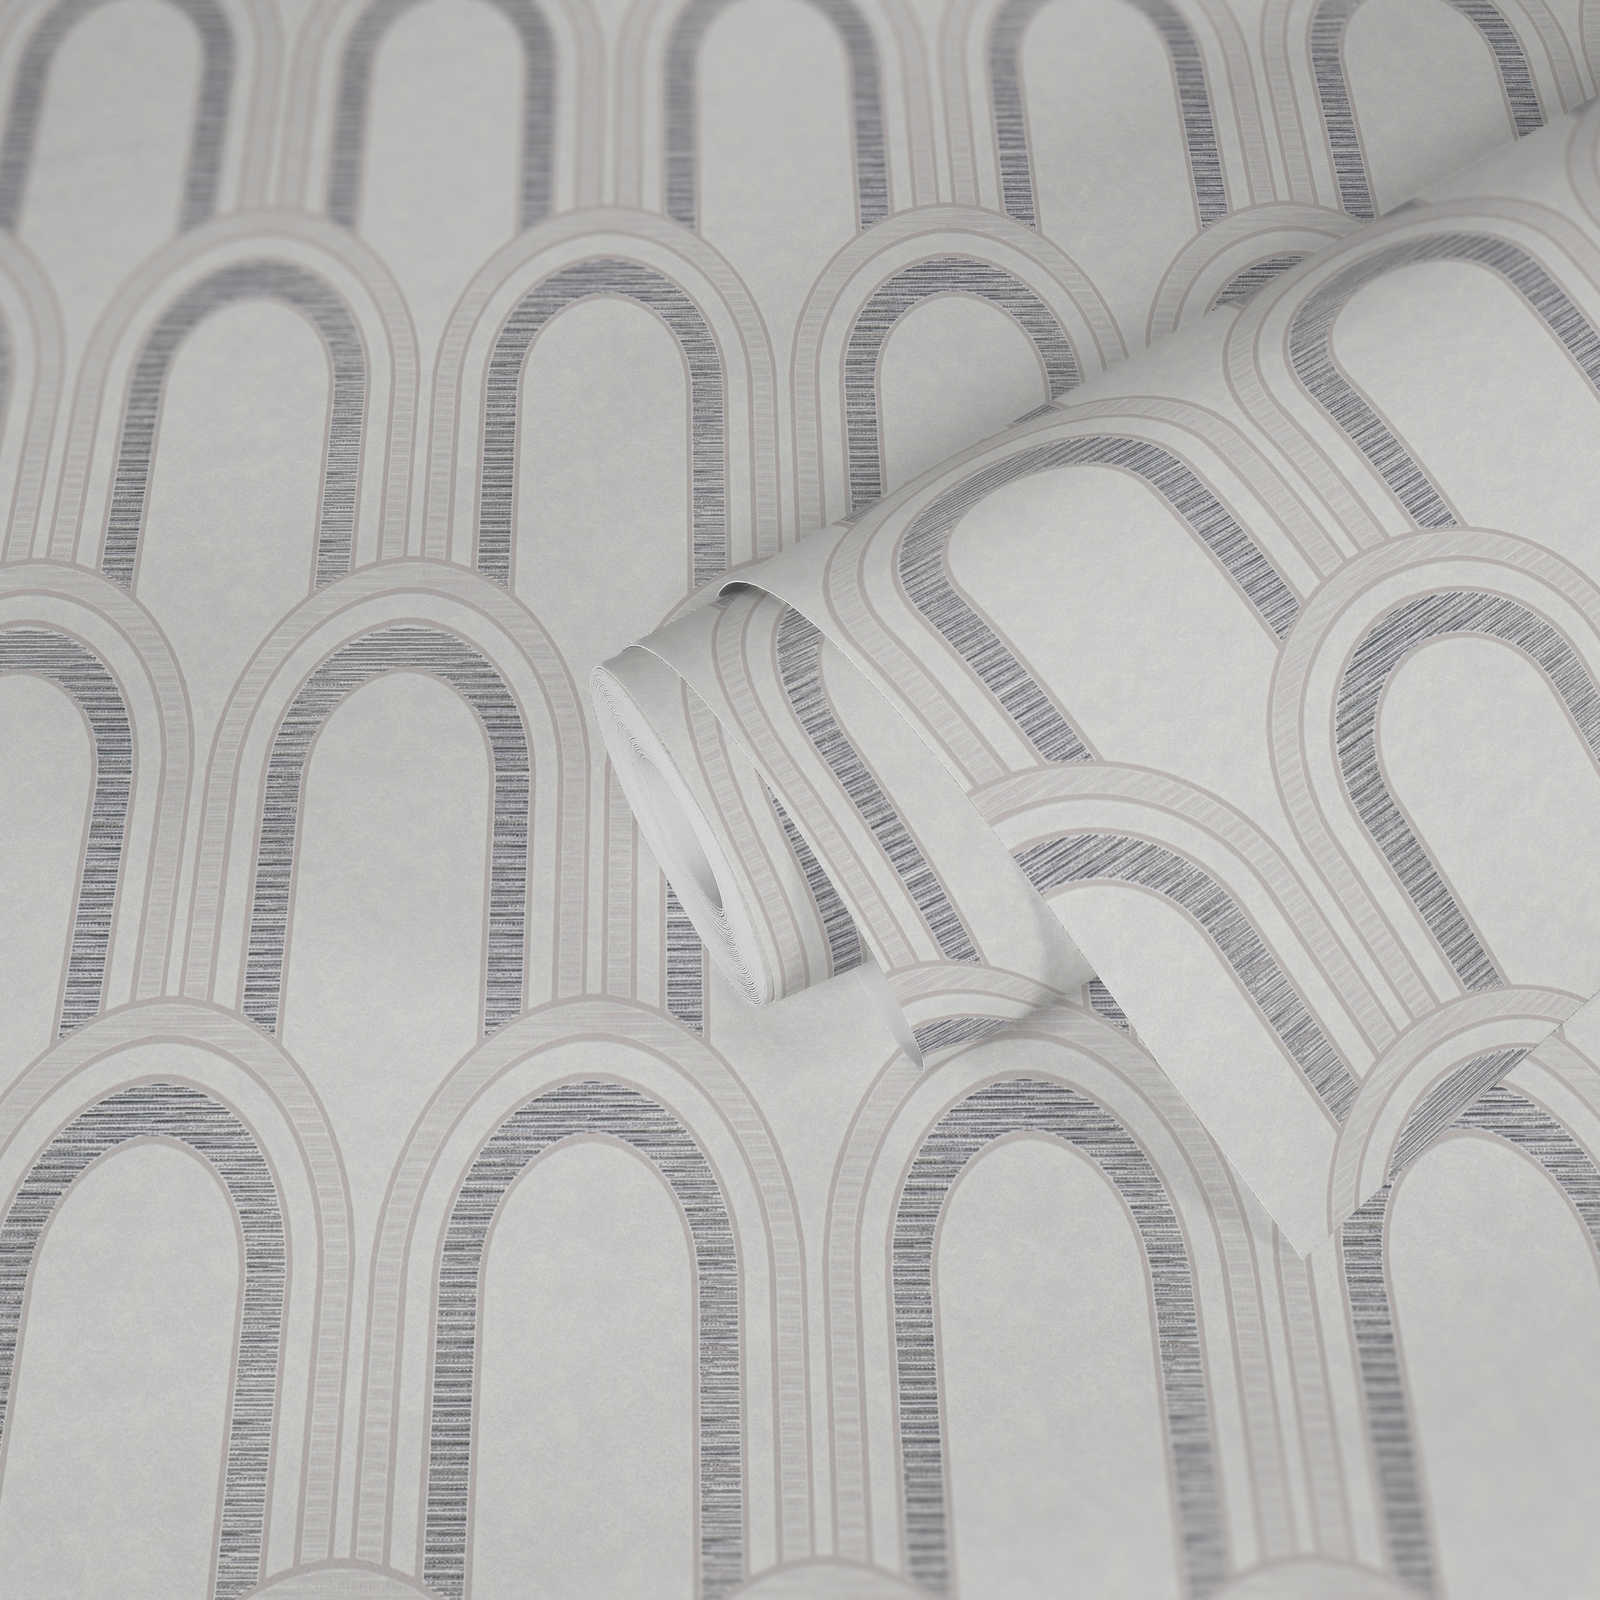             Vliestapete in Bogenoptik mit Glanzeffekt – Weiß, Grau, Silber
        